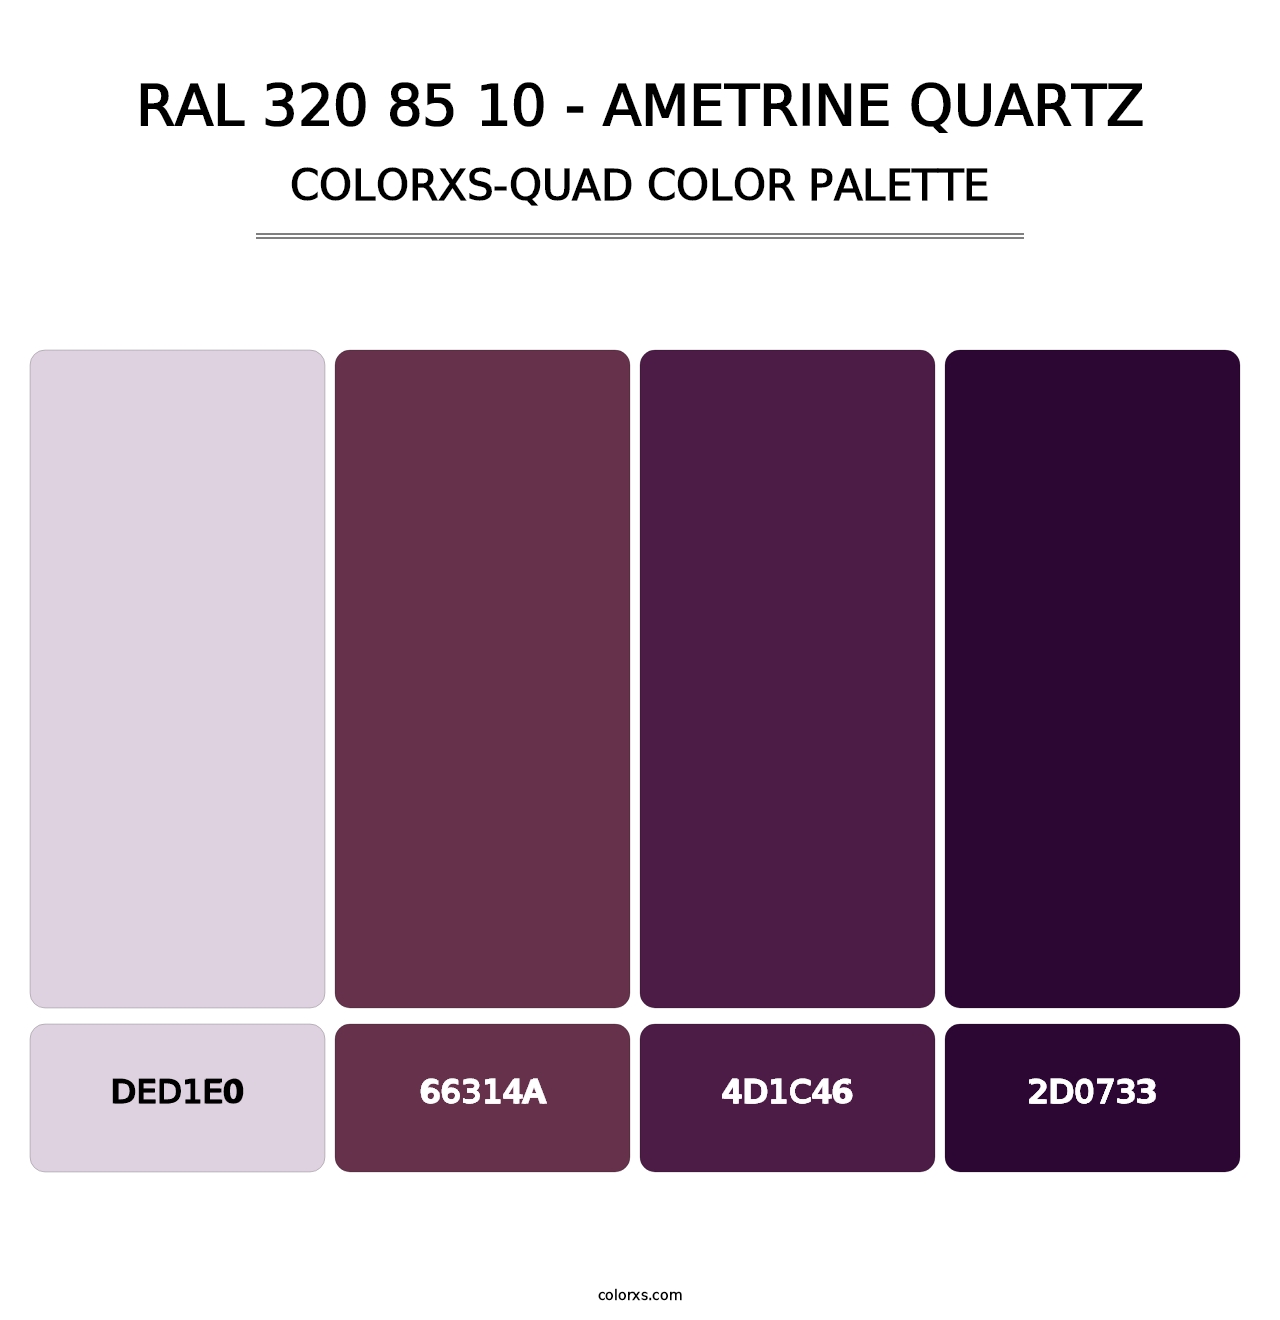 RAL 320 85 10 - Ametrine Quartz - Colorxs Quad Palette